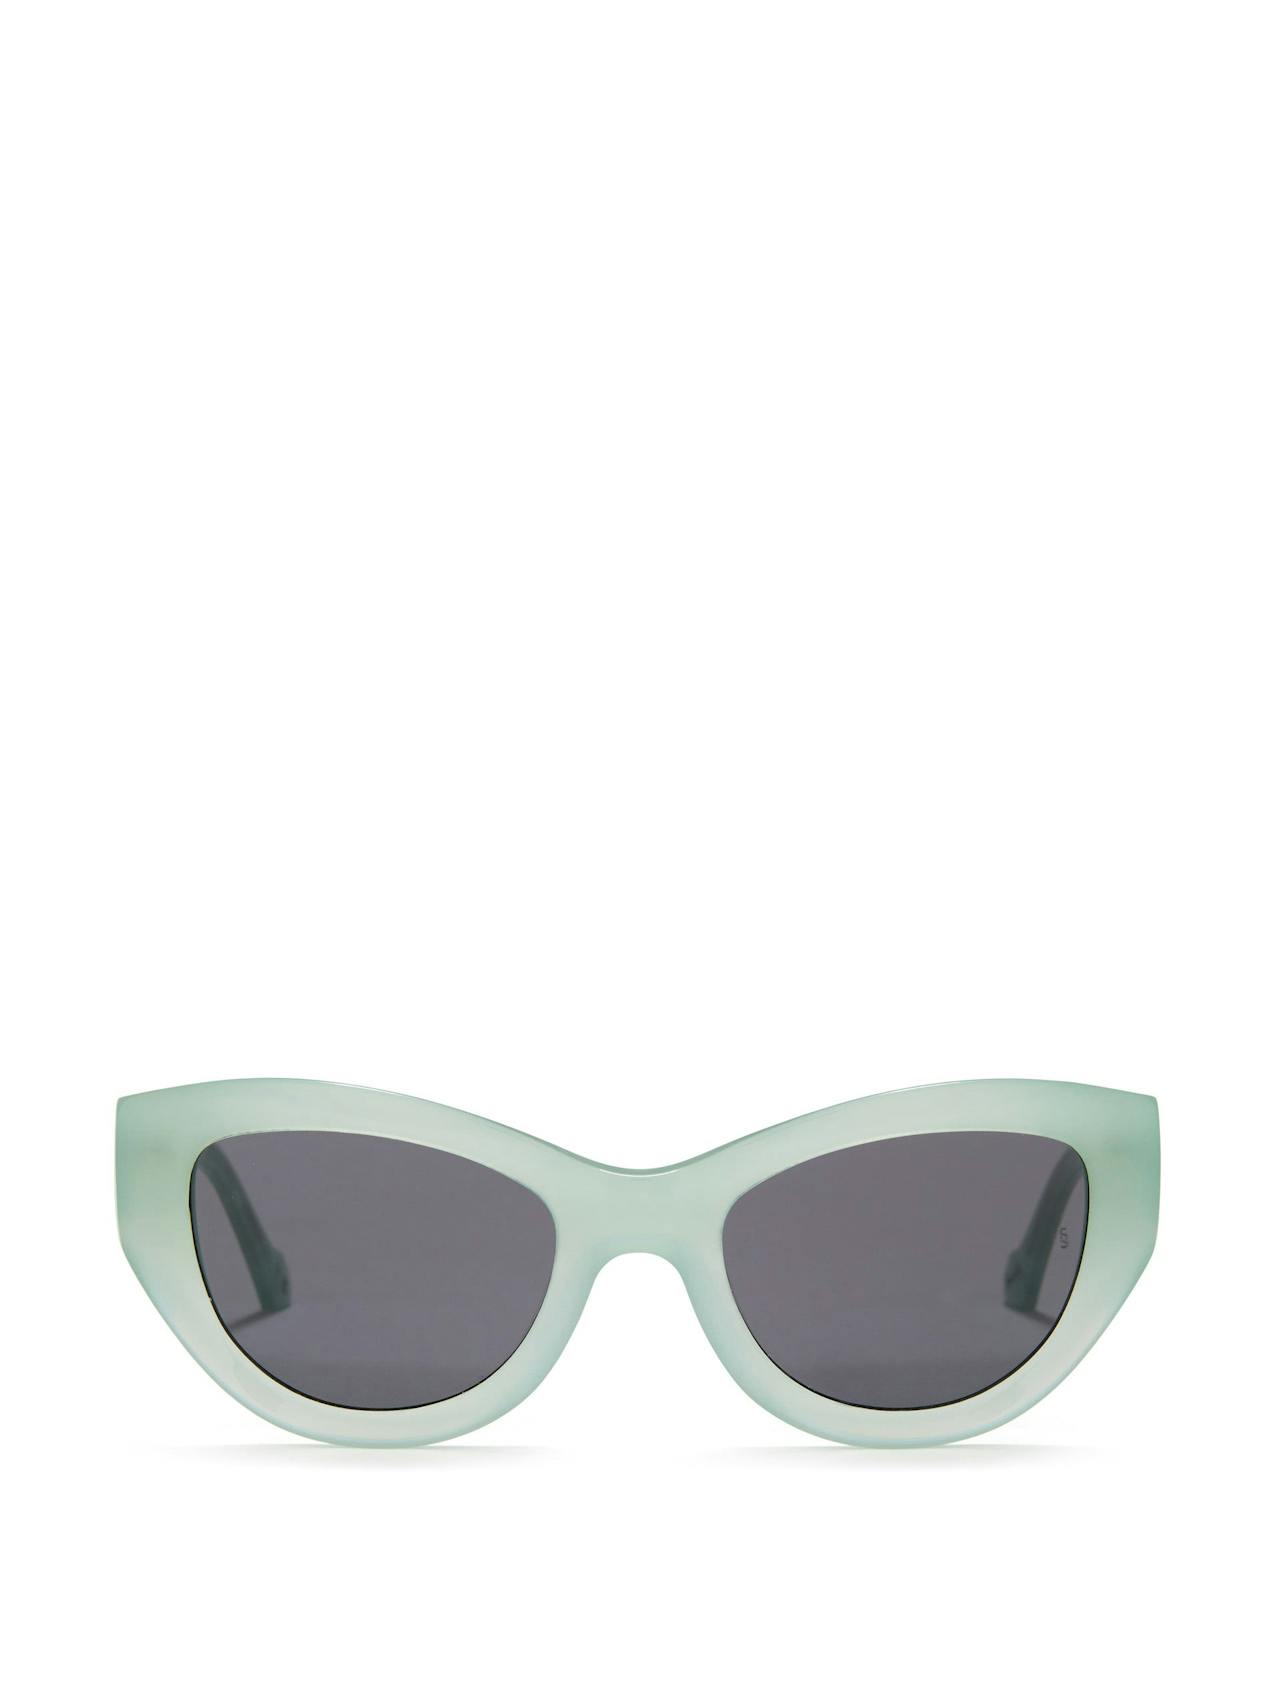 Mint Harper sunglasses